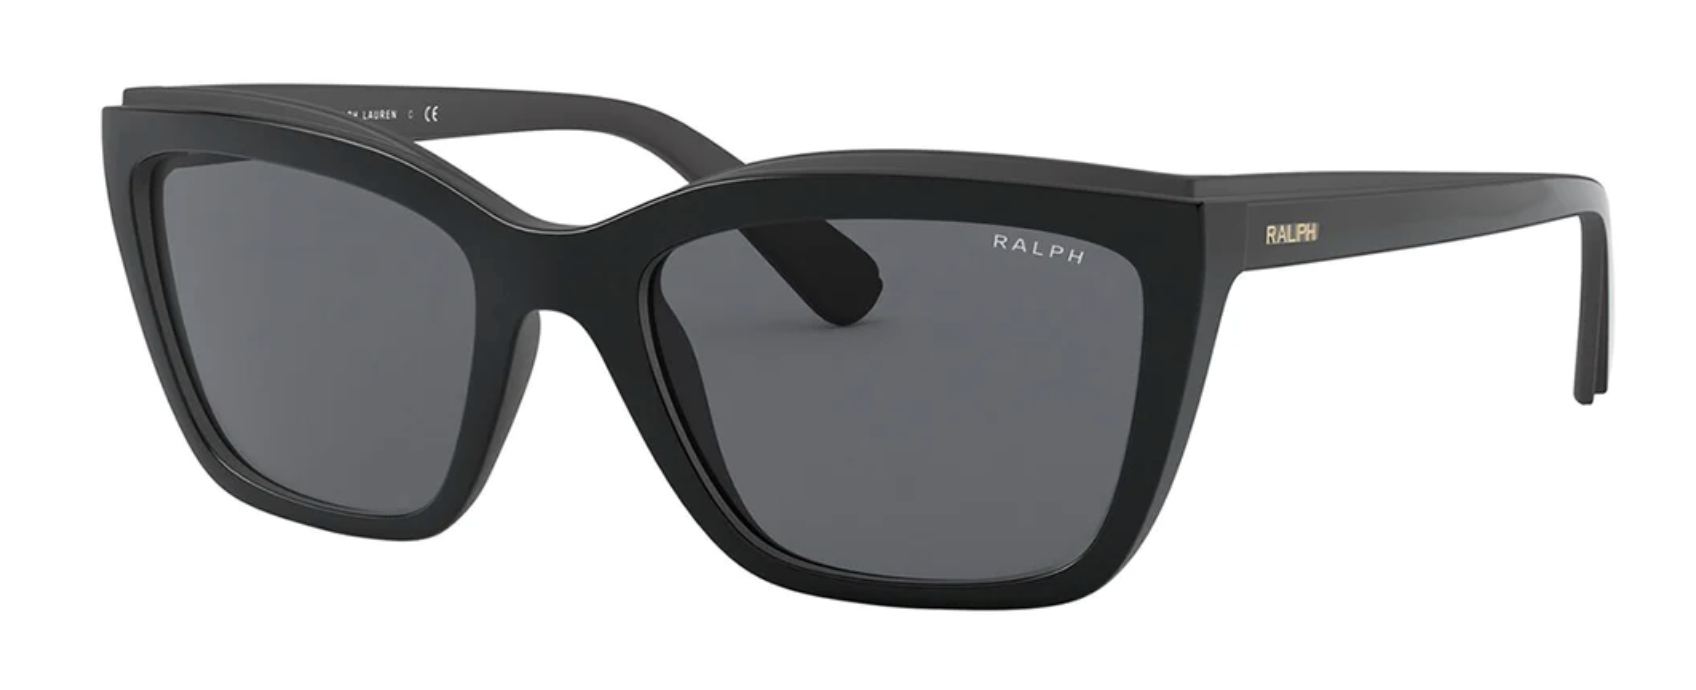 Ralph by Ralph Lauren Women's Sunglasses Rectangular RA5263500181